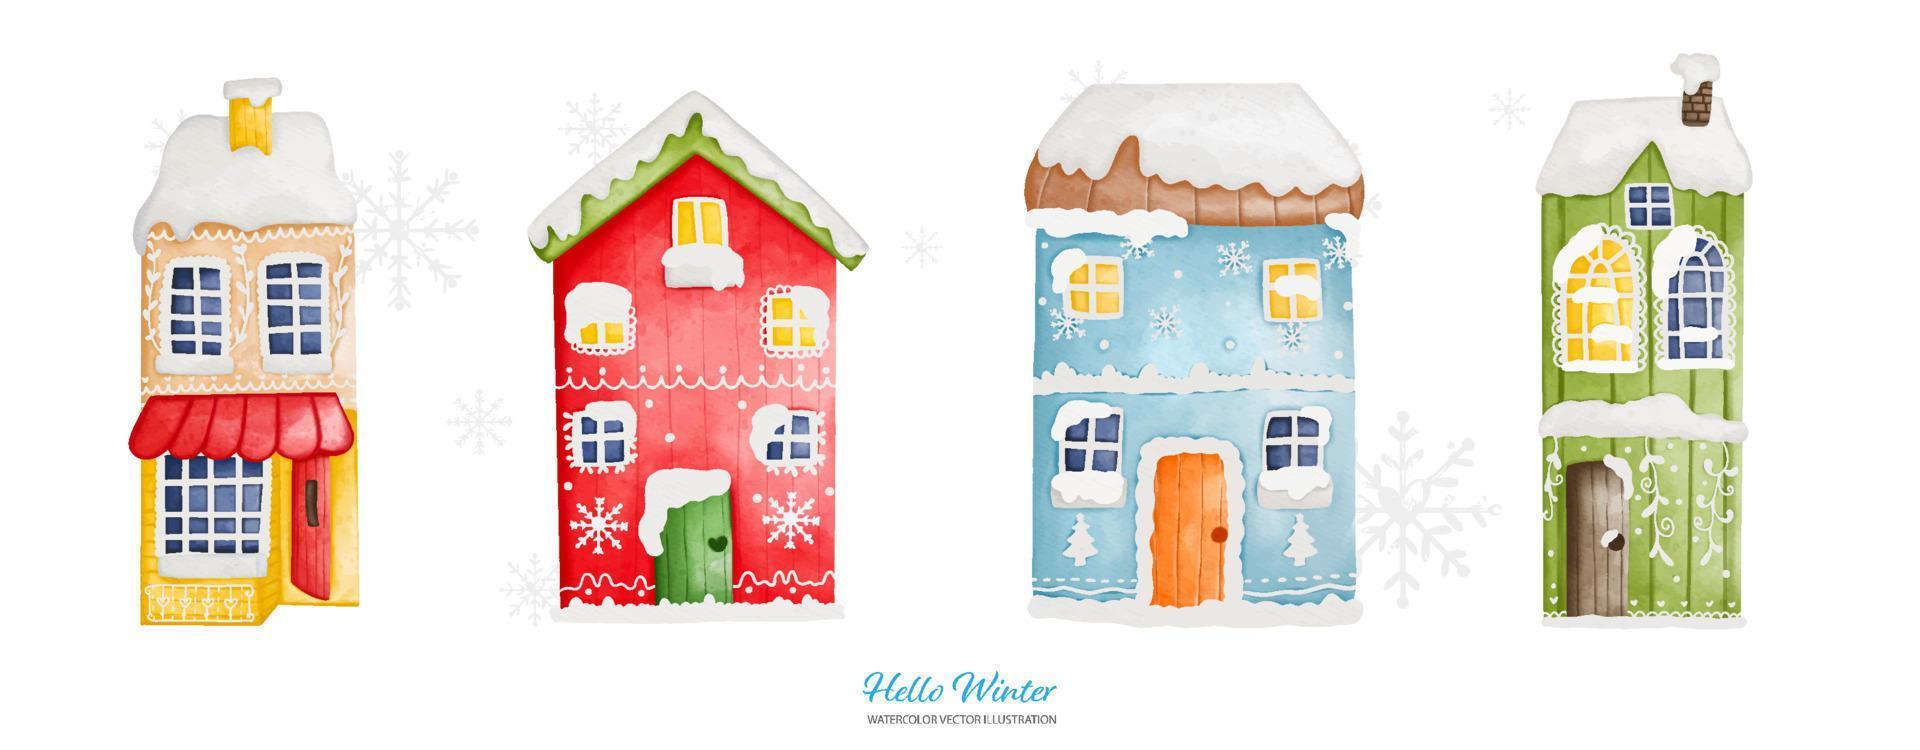 waterverf winter huis met een sneeuw pet, digitaal verf waterverf illustratie vector